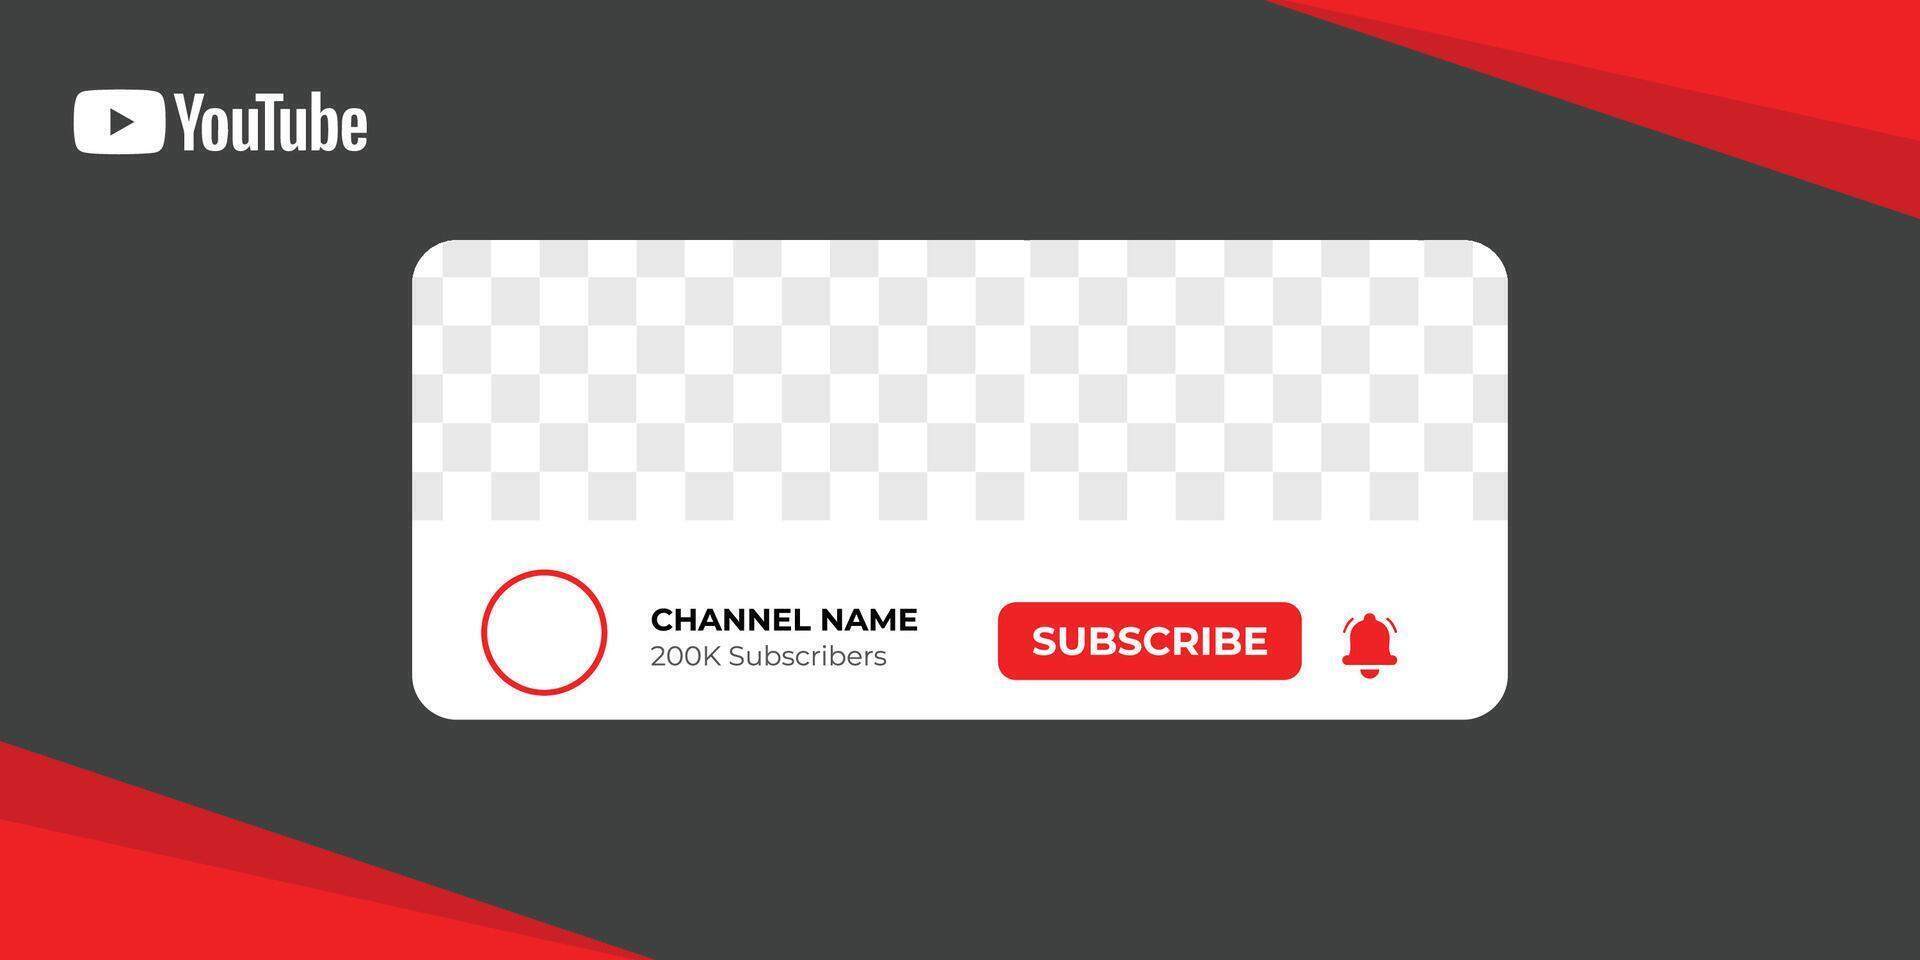 Youtube profil icône interface. souscrire bouton. canal nom. vecteur